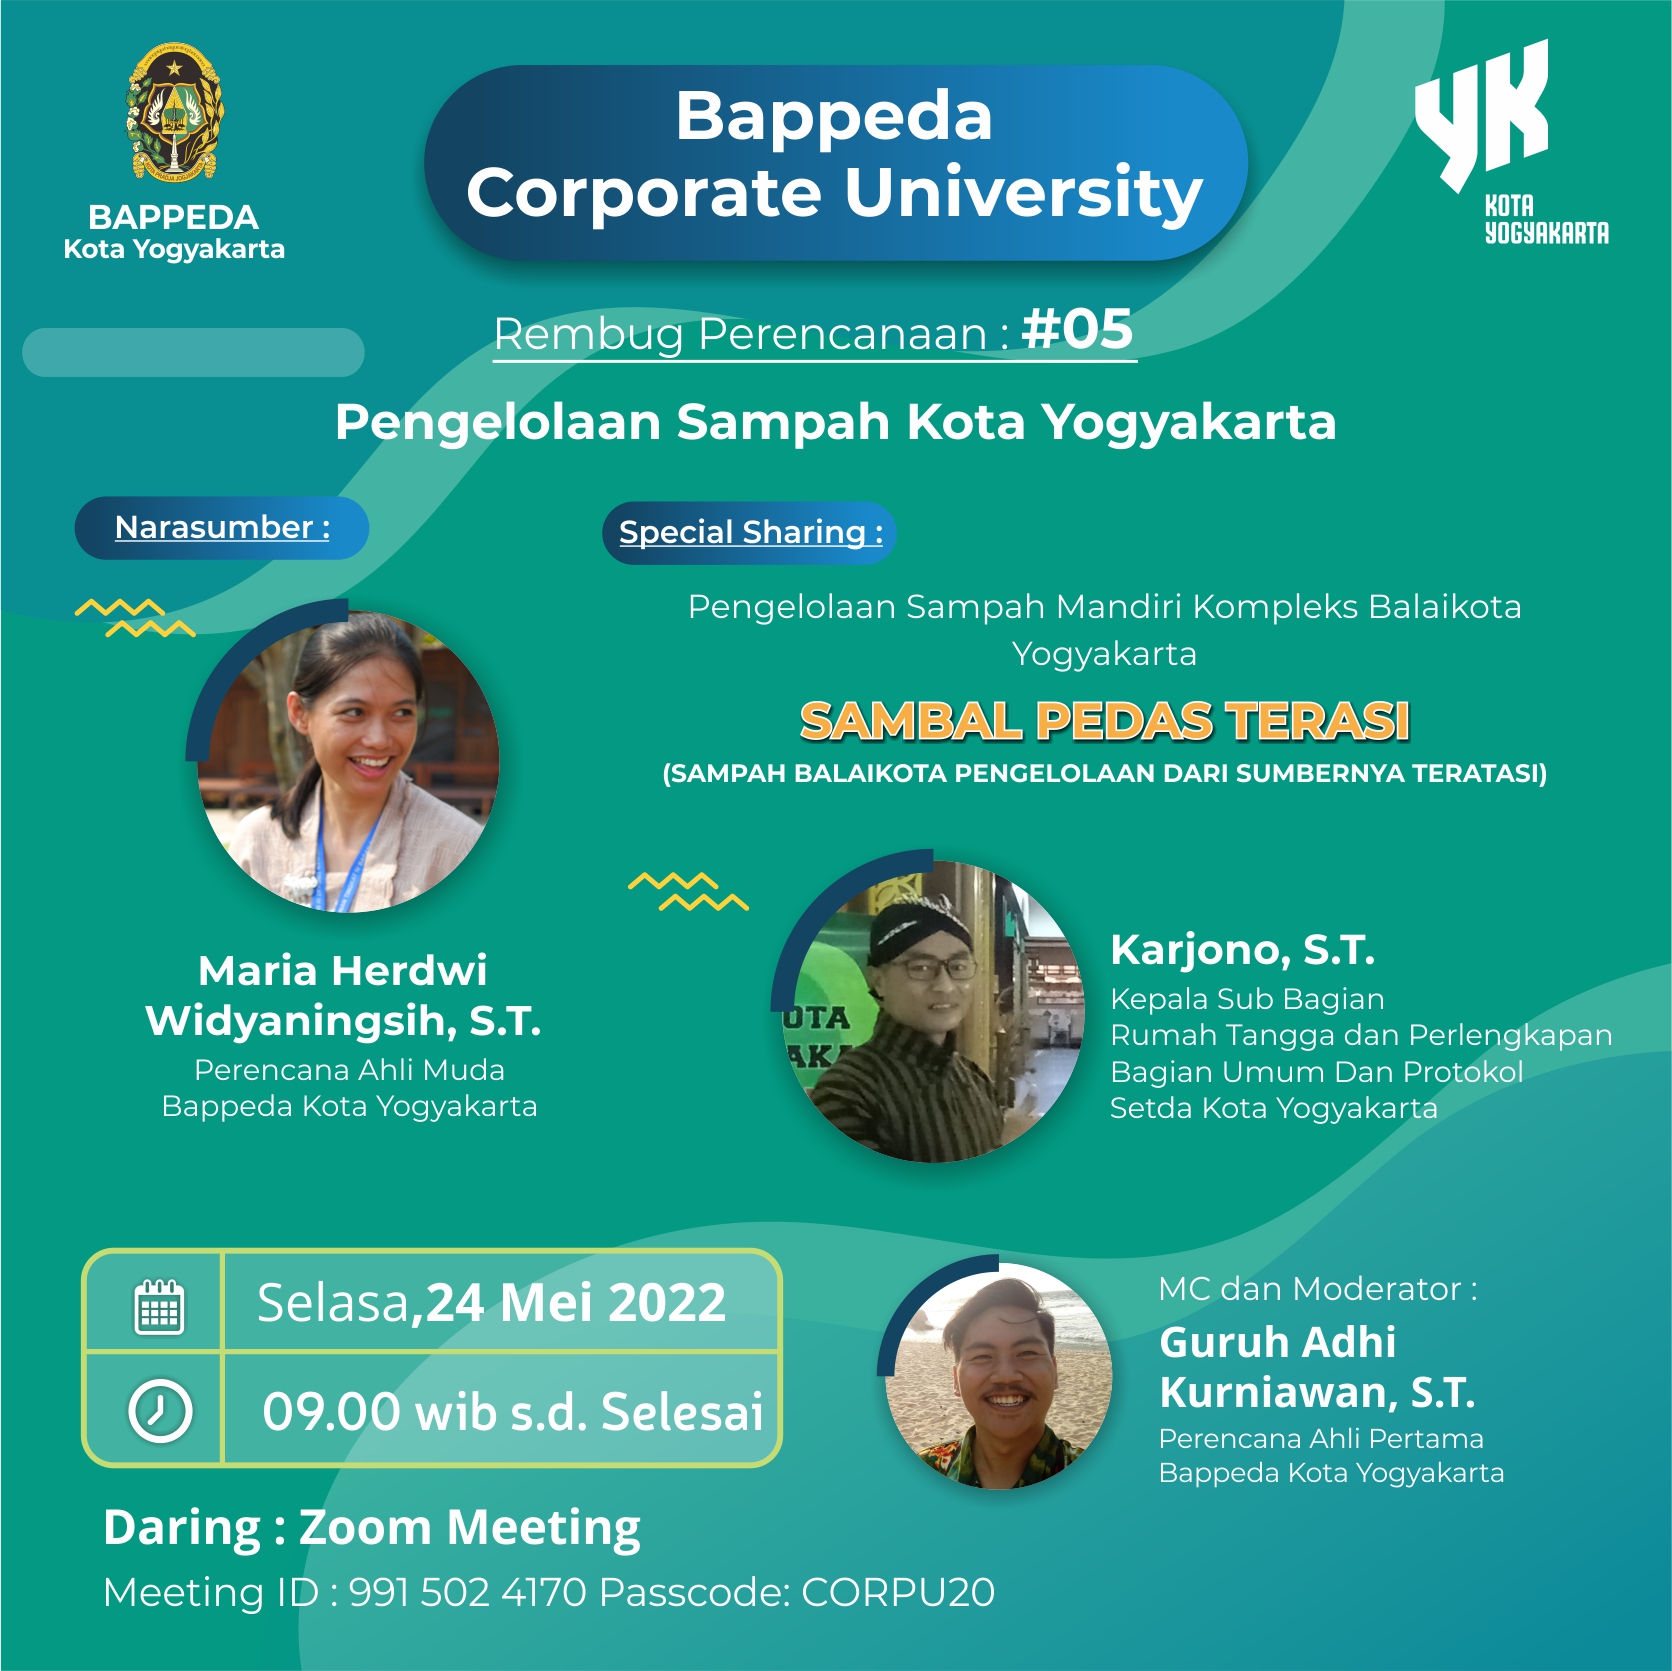 Bappeda Corporate University : “Pengelolaan Sampah Kota Yogyakarta”